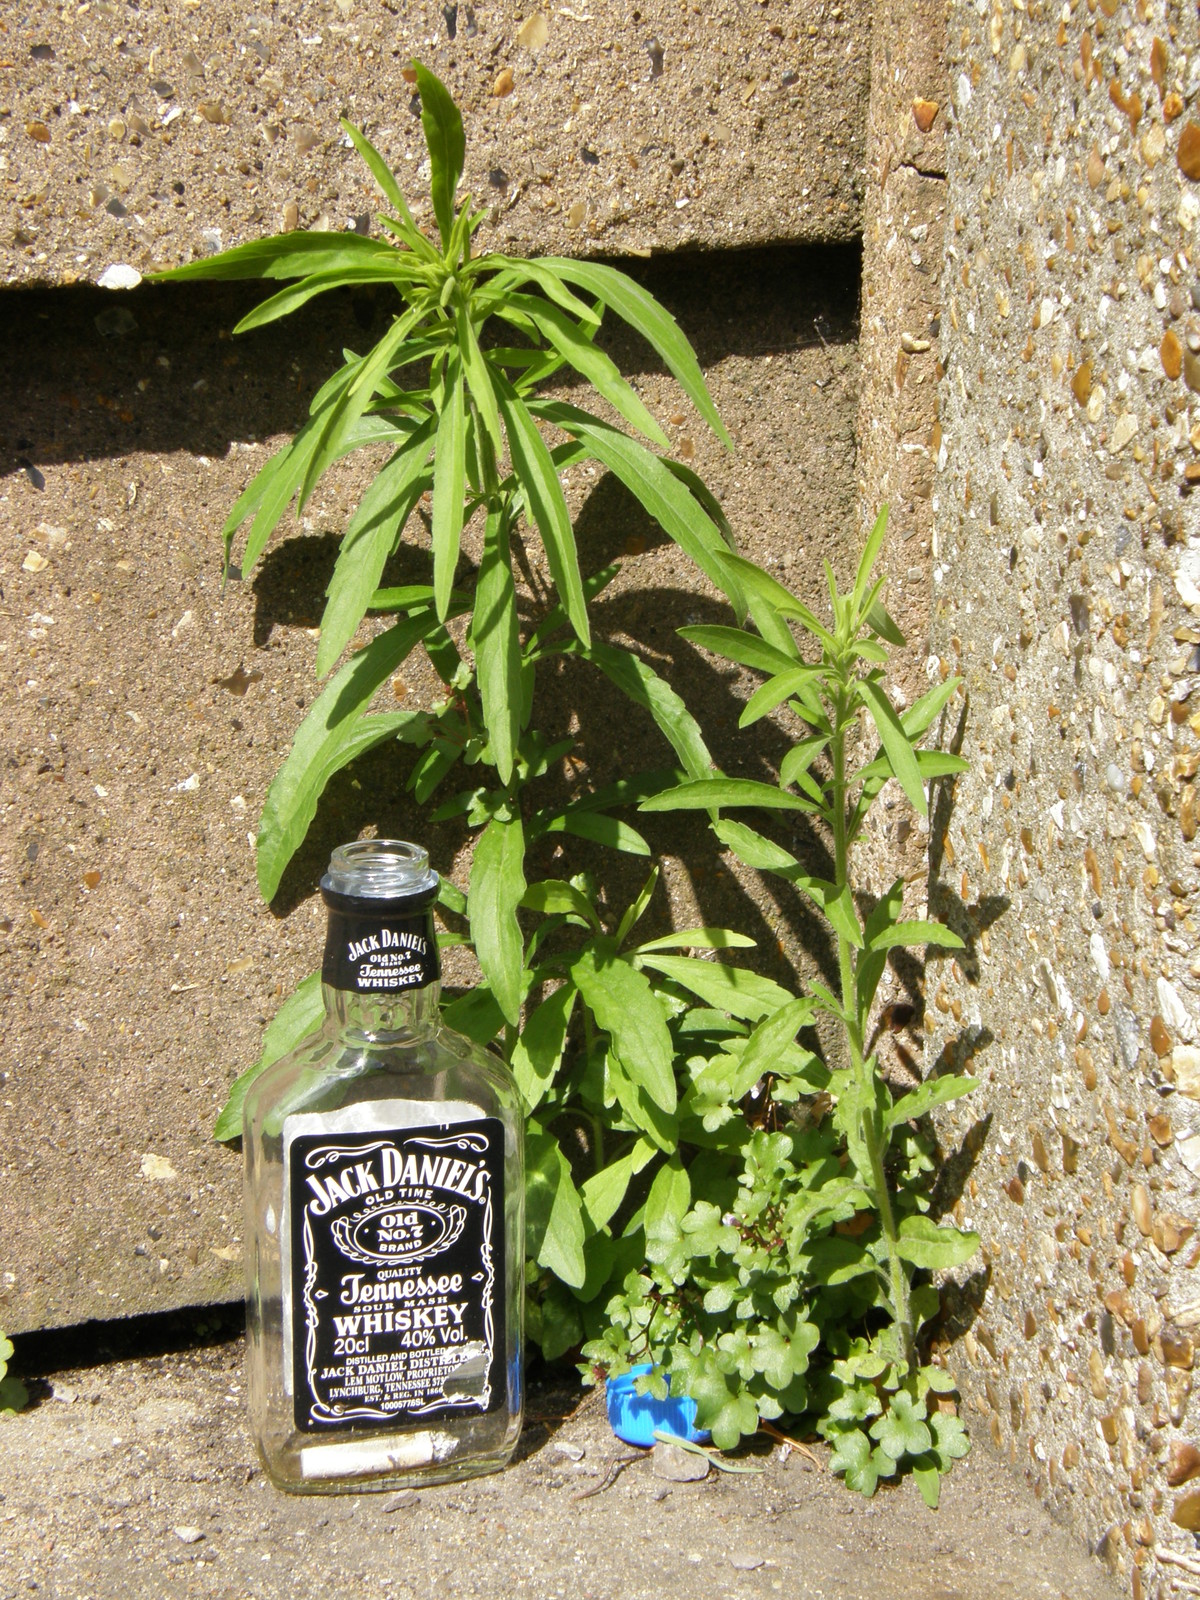 A Jack Daniel's bottle